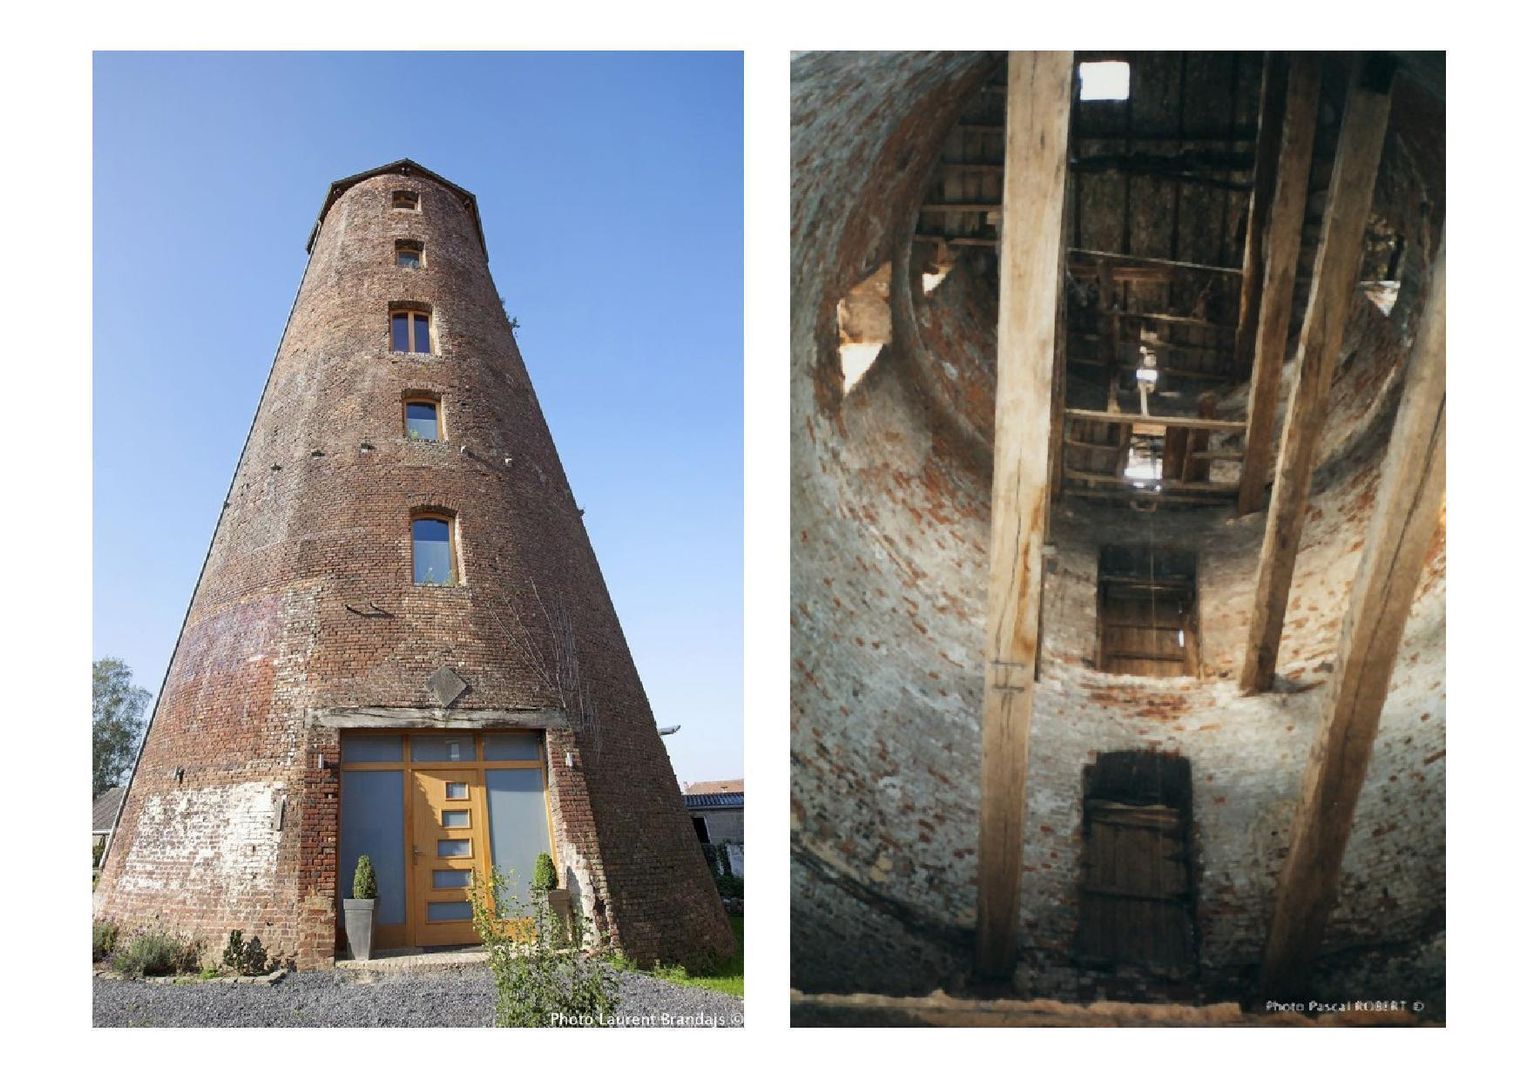 Réhabilitation d’un ancien moulin à vent en habitation - Hainaut - Belgique, Draw&dO Draw&dO